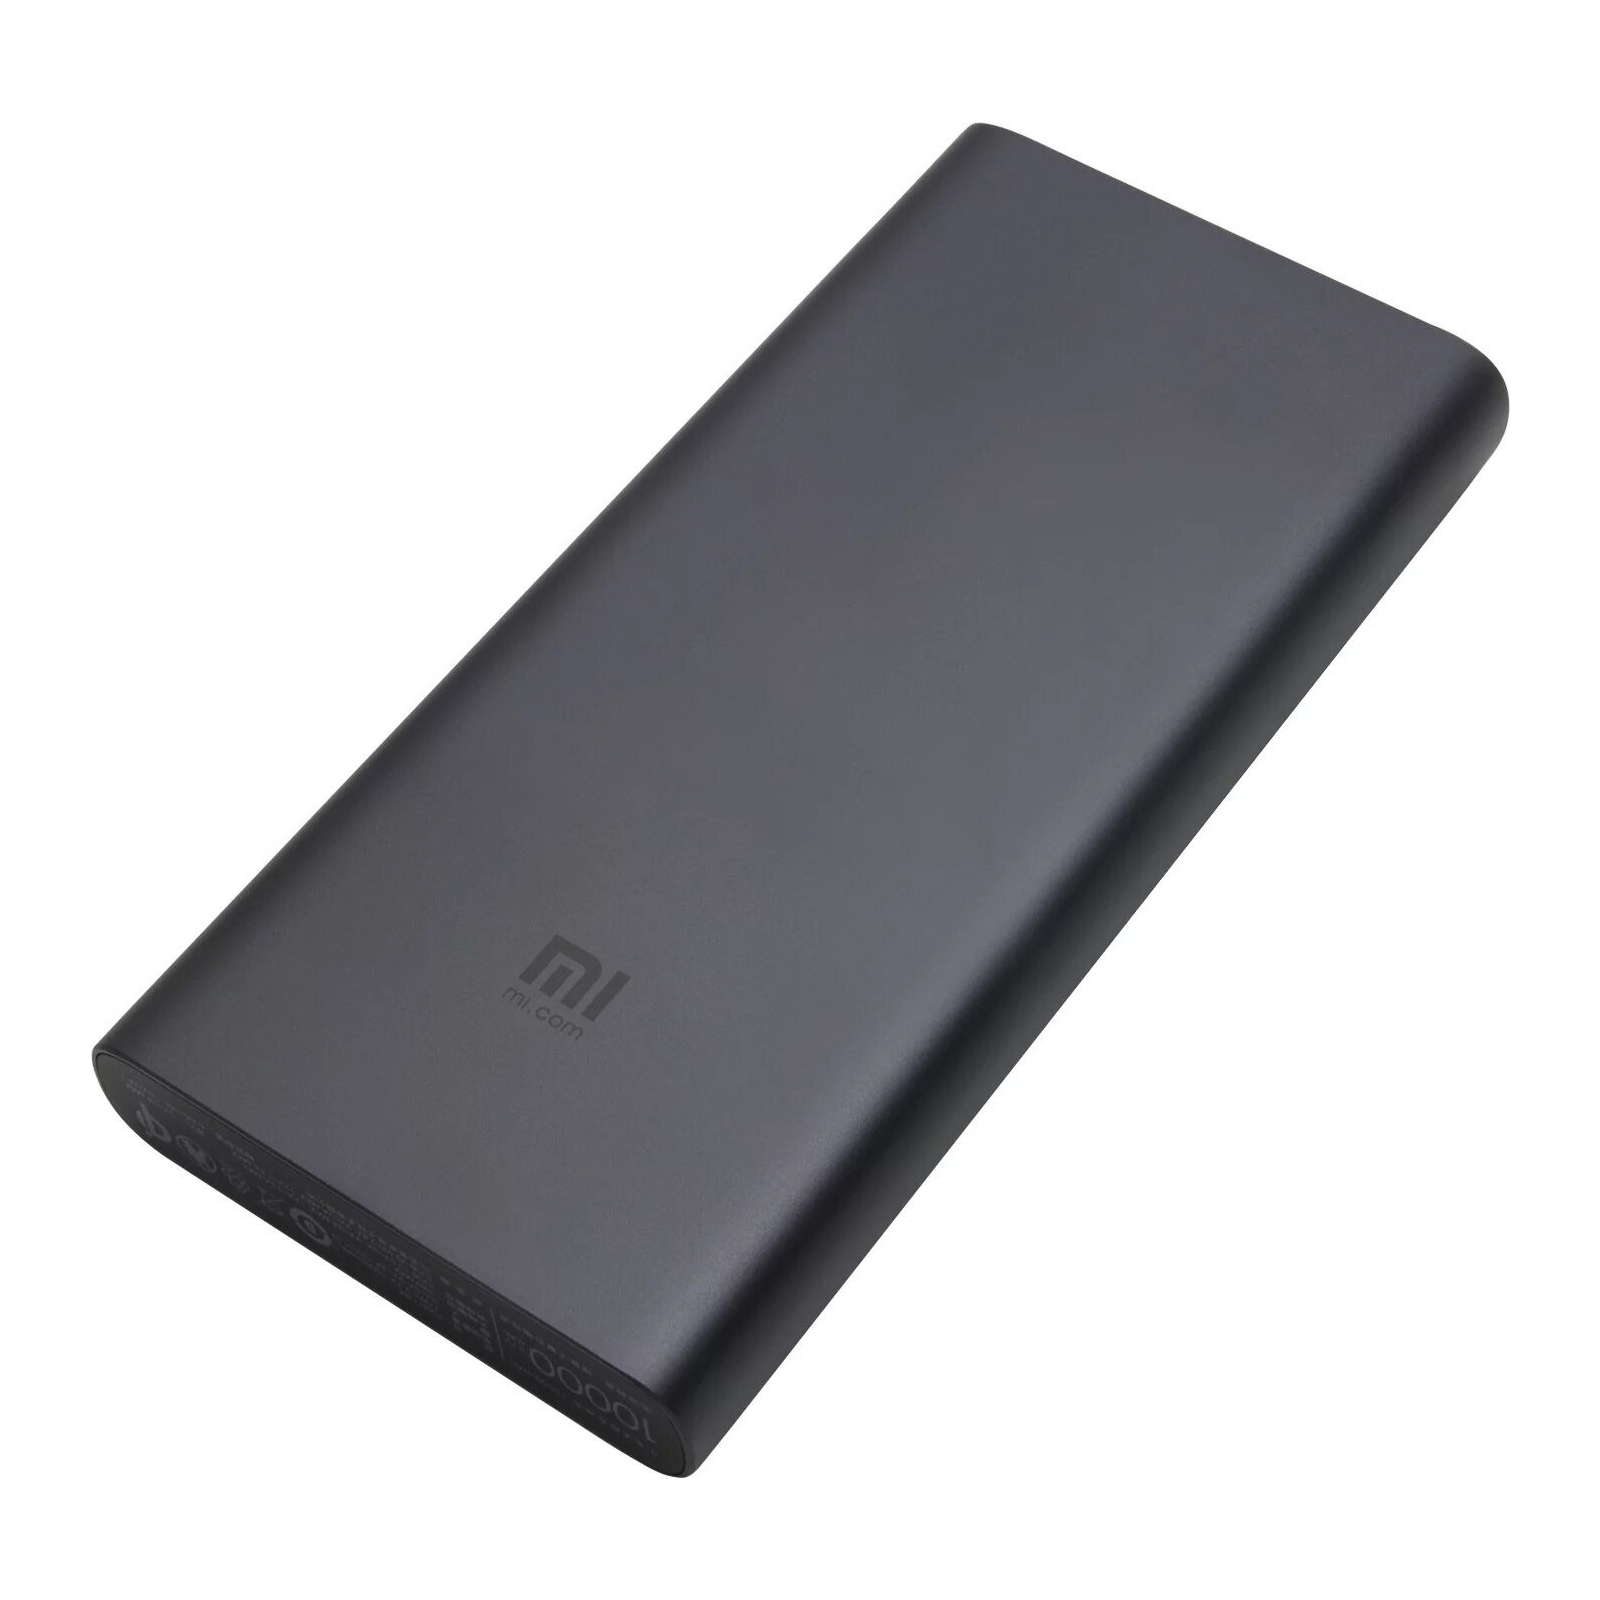 Батарея універсальна Xiaomi Mi Power Bank 10000 mAh QC3.0 + беспроводная зарядка Black (VXN4269 / 495077) зображення 7